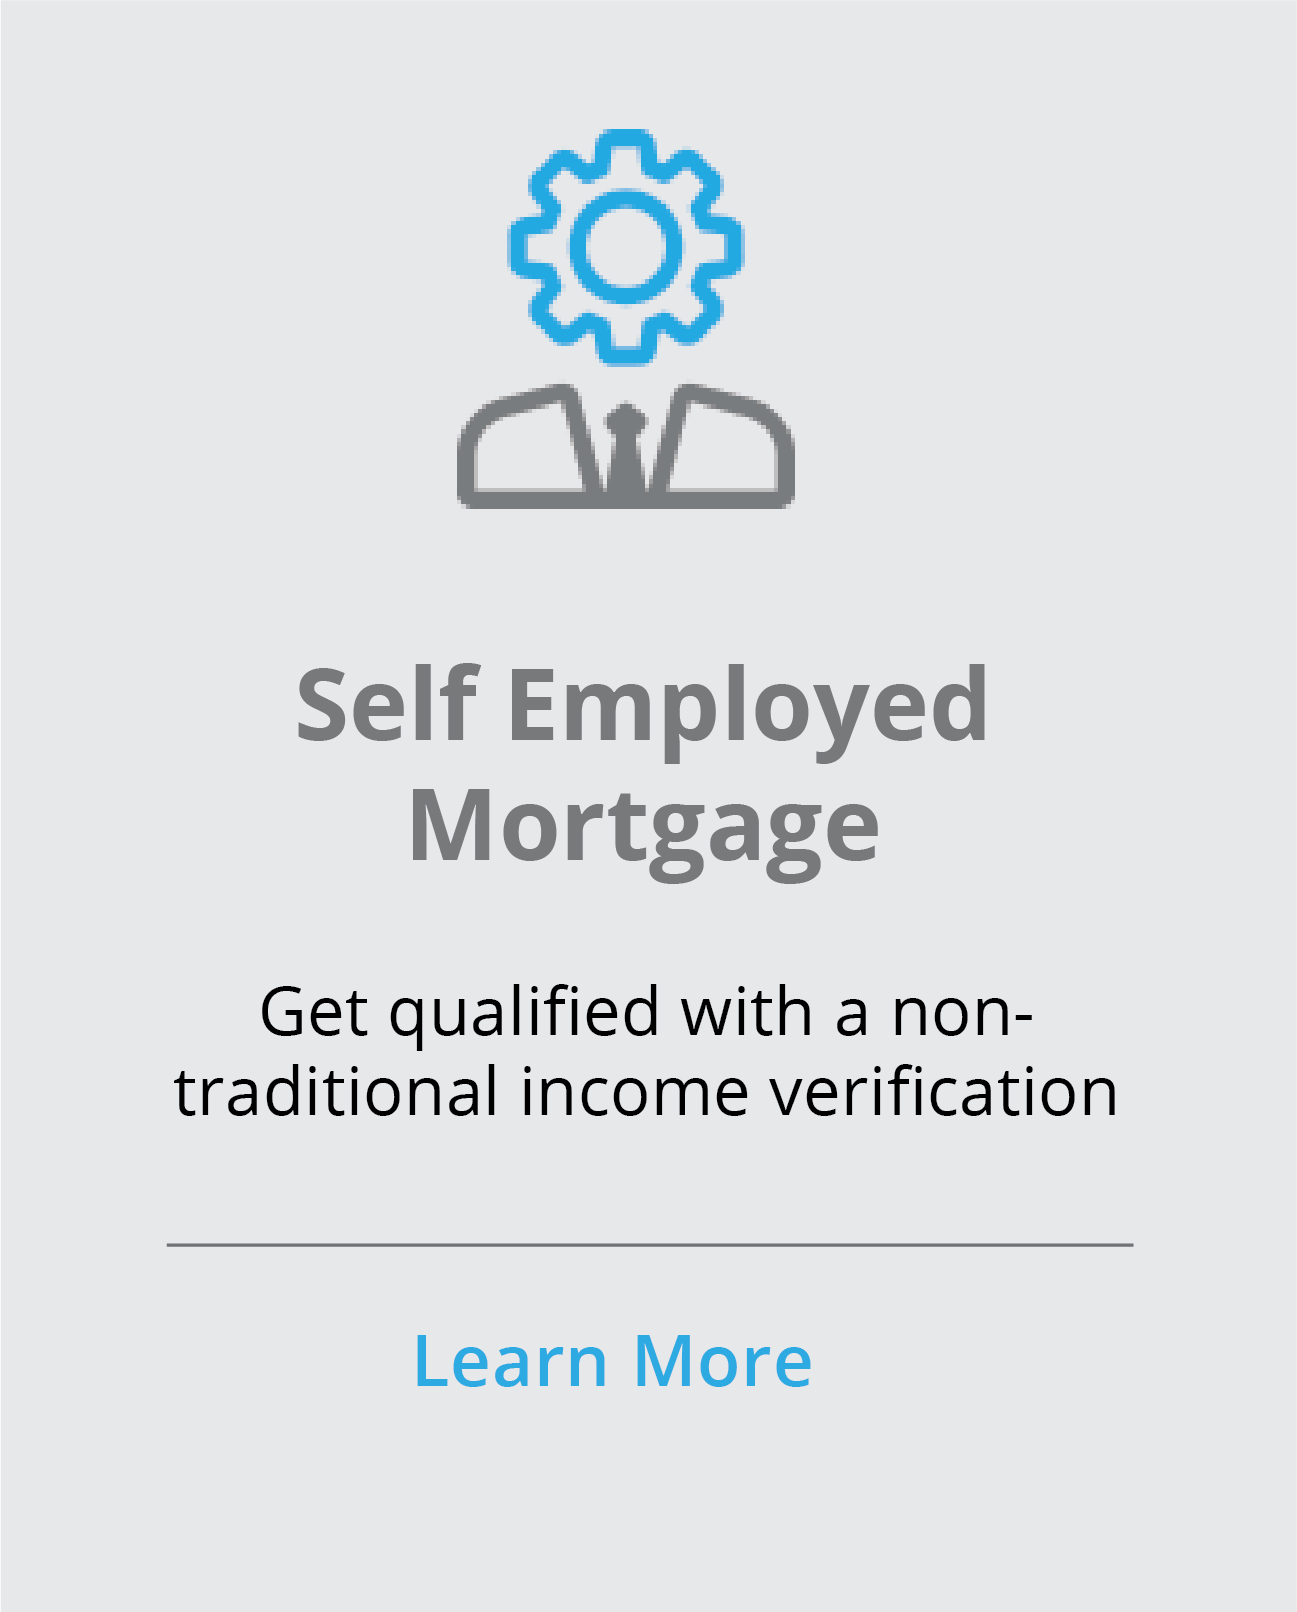 Self employed mortgage